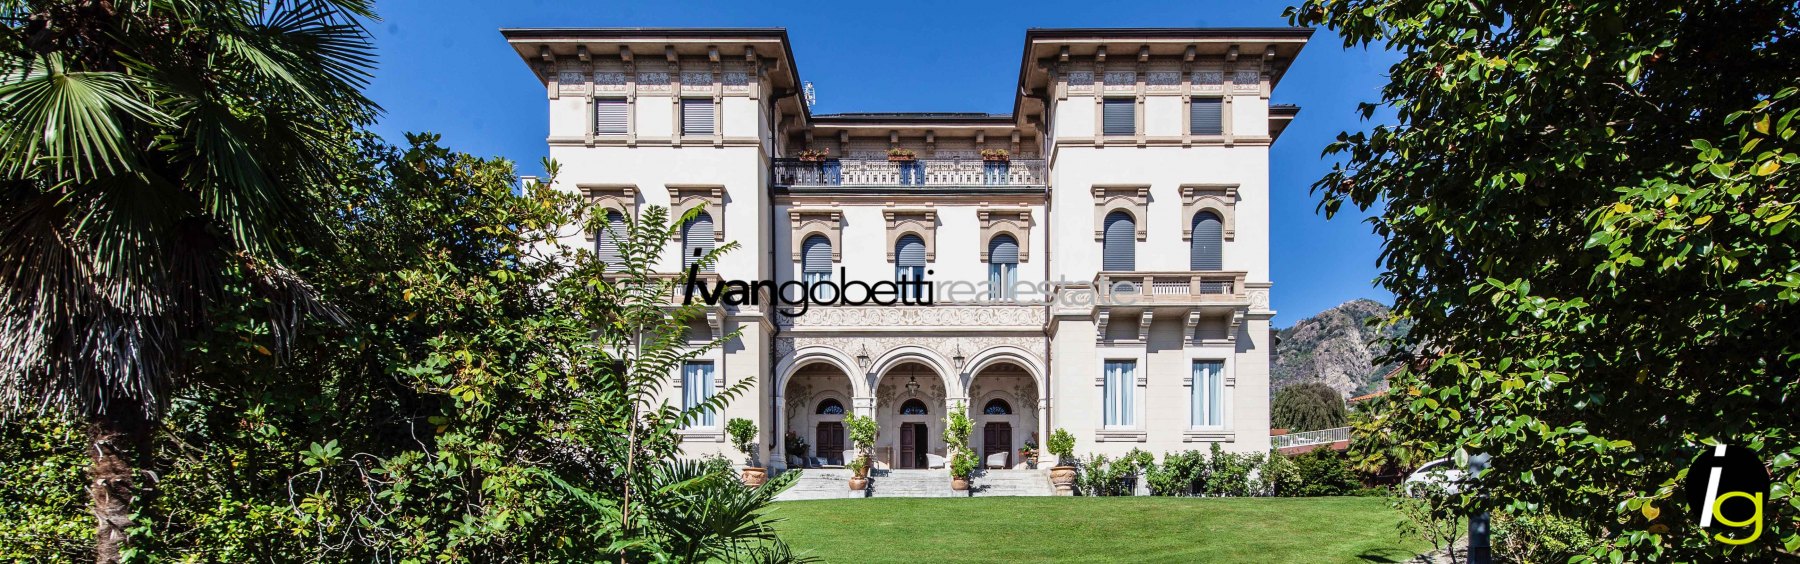 Lussuosa Villa storica in vendita a Baveno Lago Maggiore<br/><span>Codice prodotto: 110877